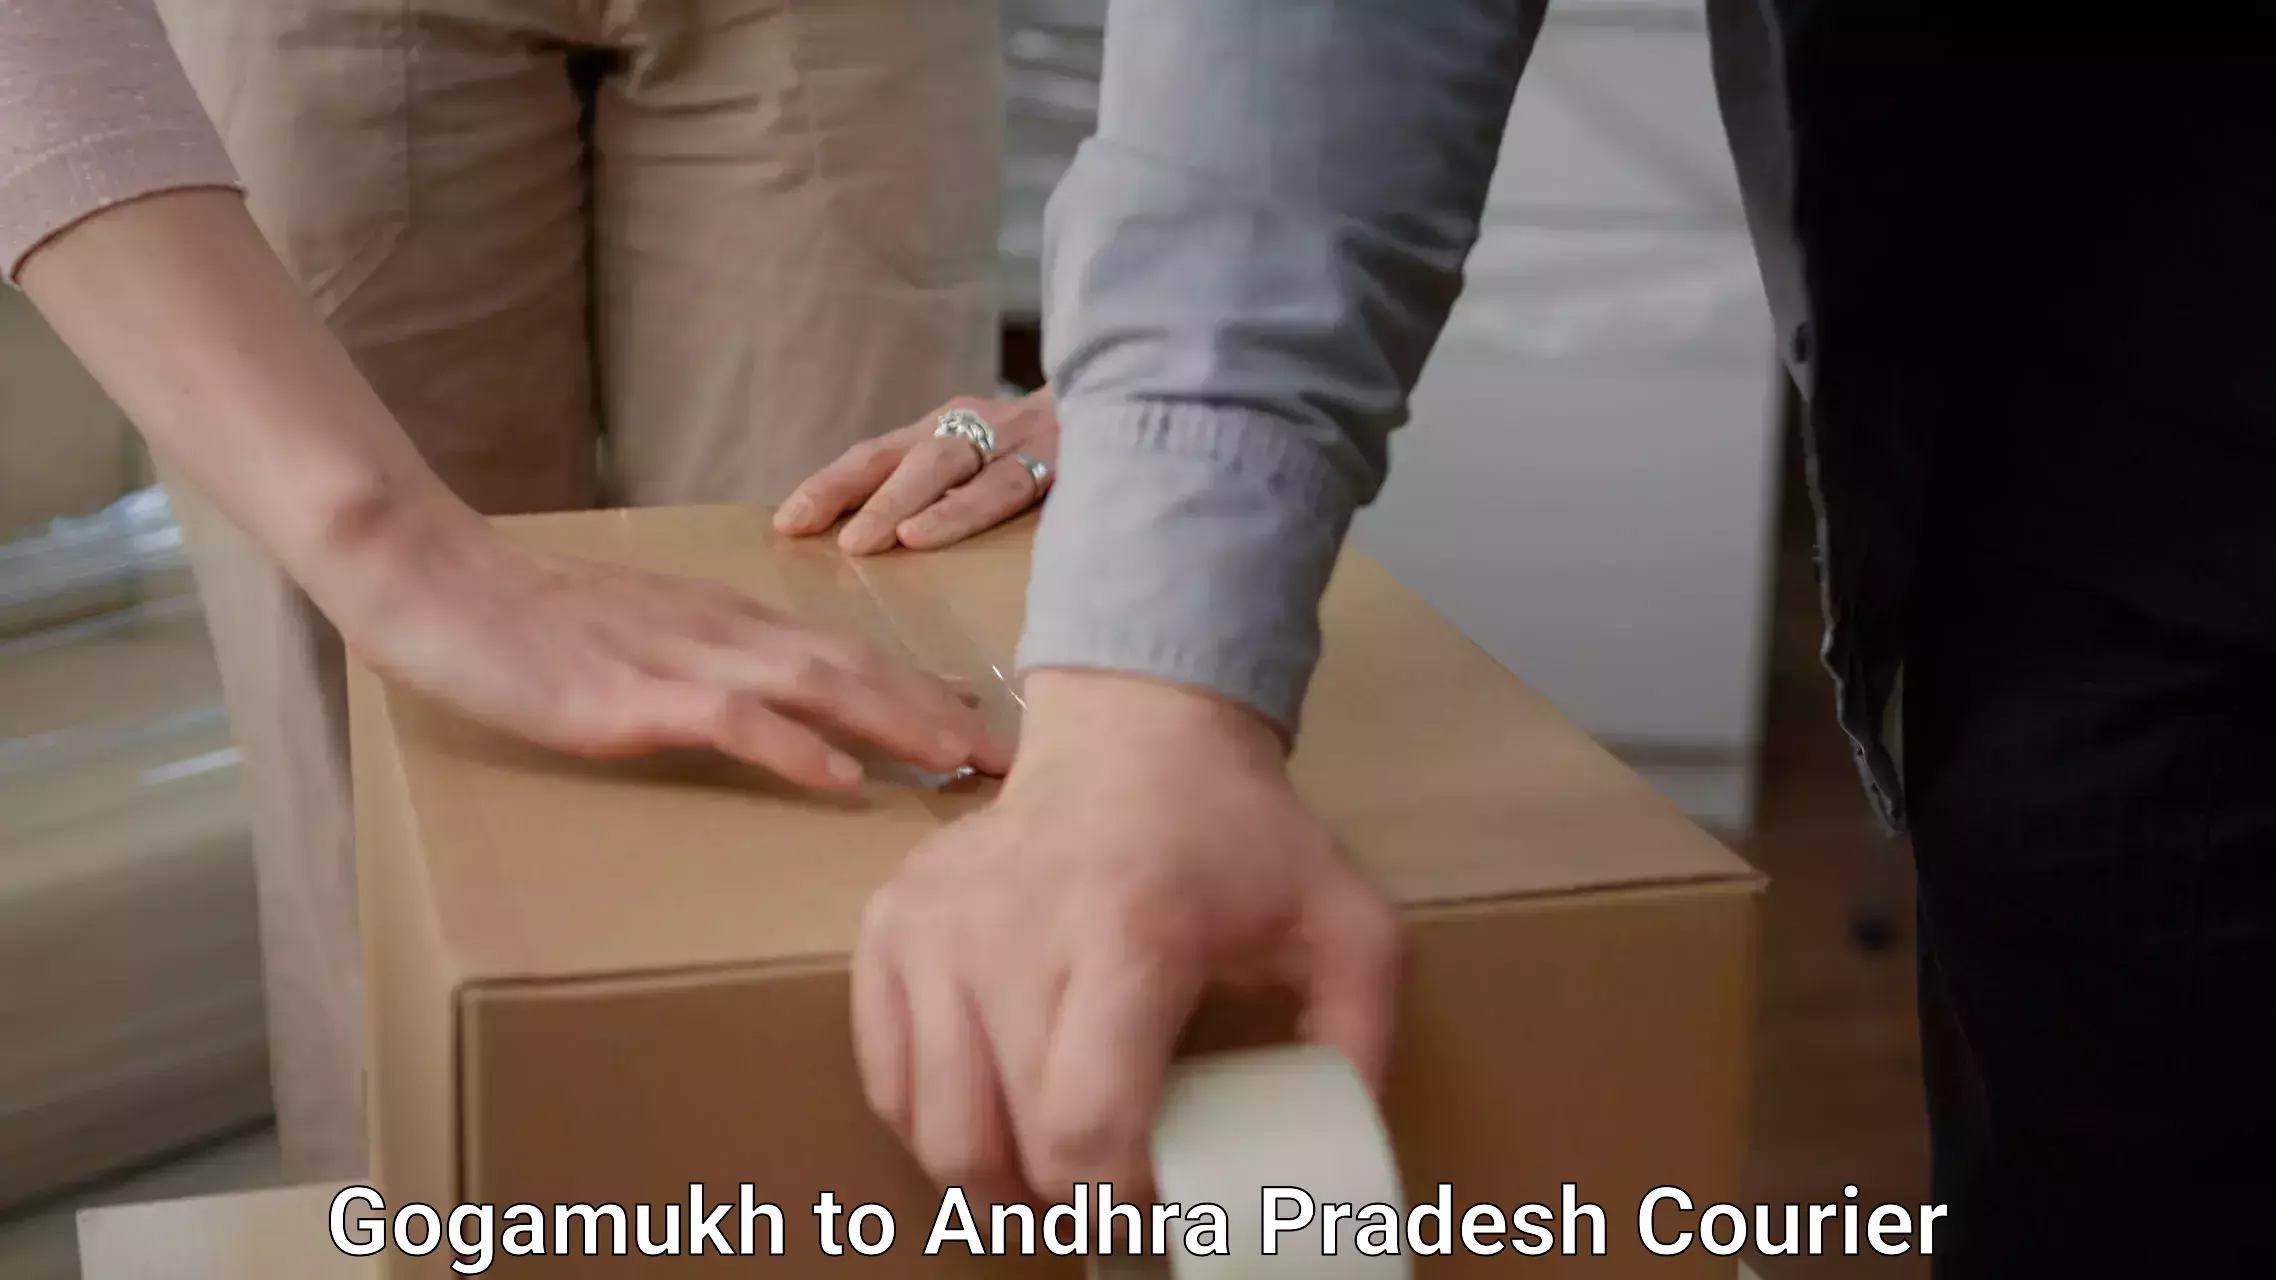 Furniture transport experts Gogamukh to Andhra Pradesh